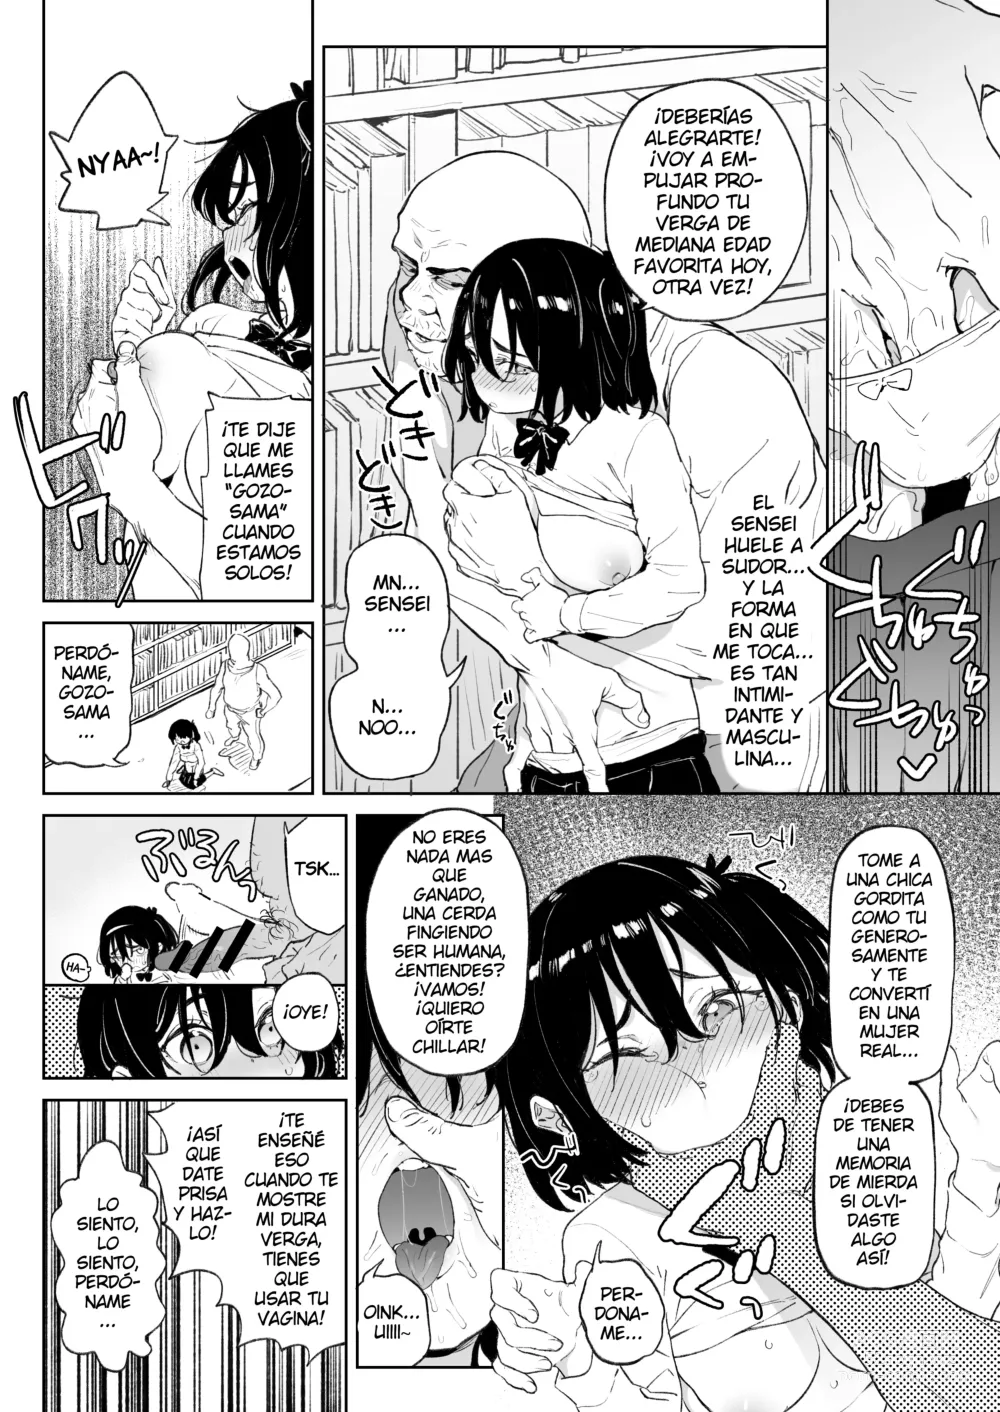 Page 5 of doujinshi Genki na Musume mo Otonashii Musume mo Chinpo no Mae de wa Kekkyoku no Tokoro Mesu de Aru.